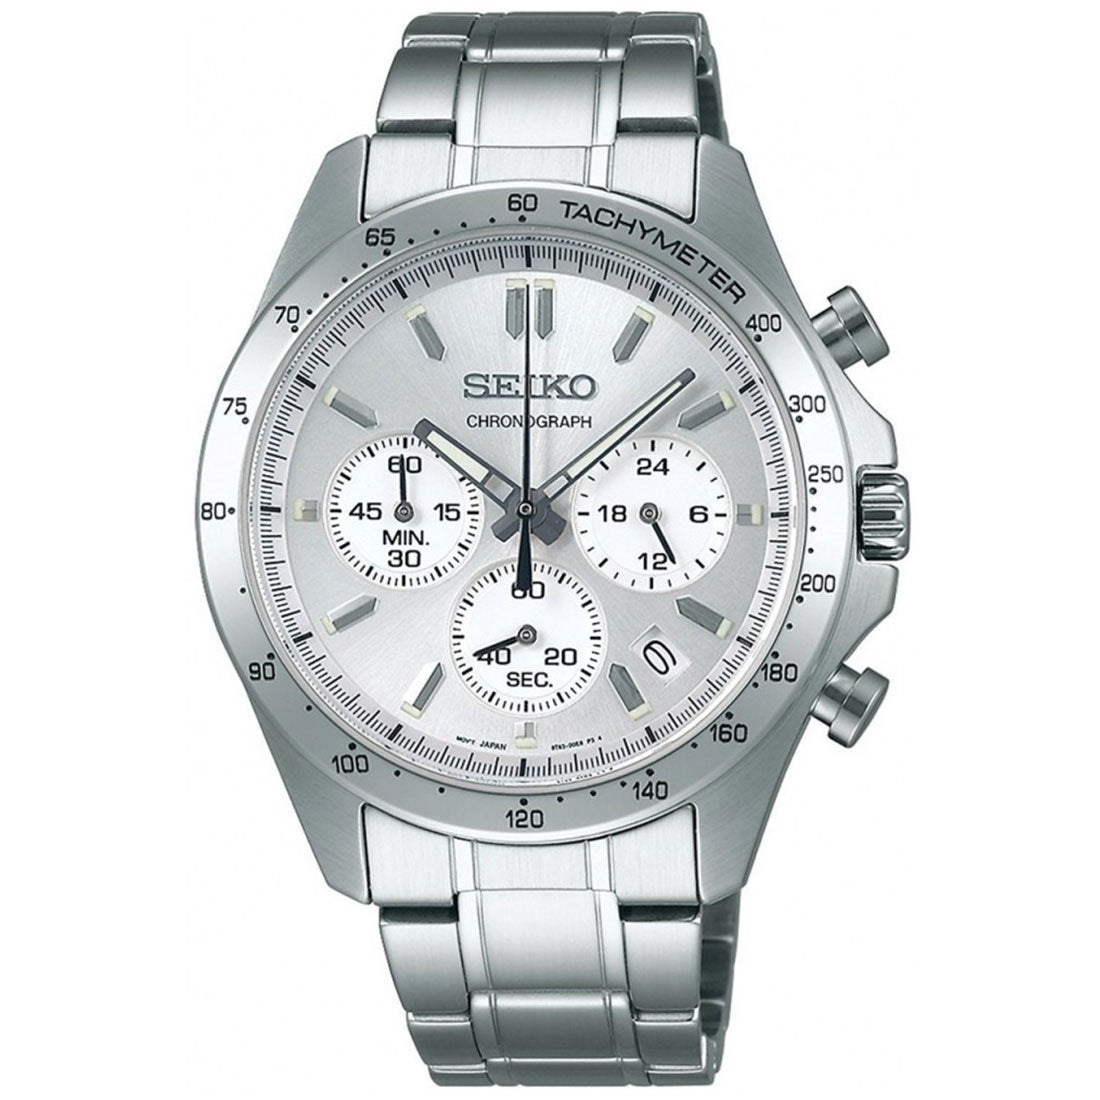 Seiko Spirit JDM Selection Chronograph SBTR009 Silver Dial Quartz Stainless Steel Watch -Seiko